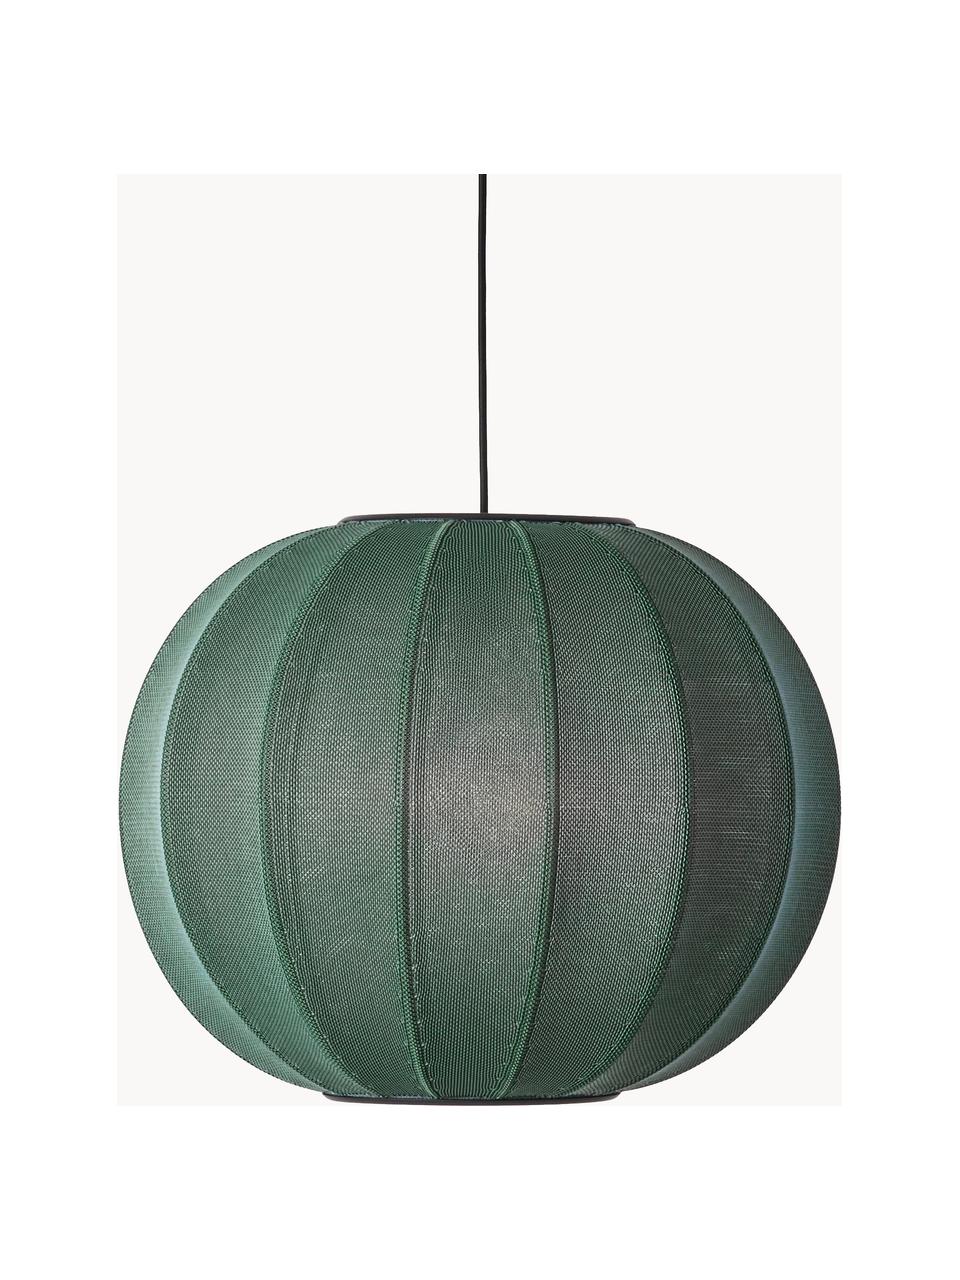 Lámpara de techo Knit-Wit, Pantalla: fibra sintética, Adornos: metal recubierto, Cable: cubierto en tela, Verde oscuro, Ø 45 x Al 36 cm